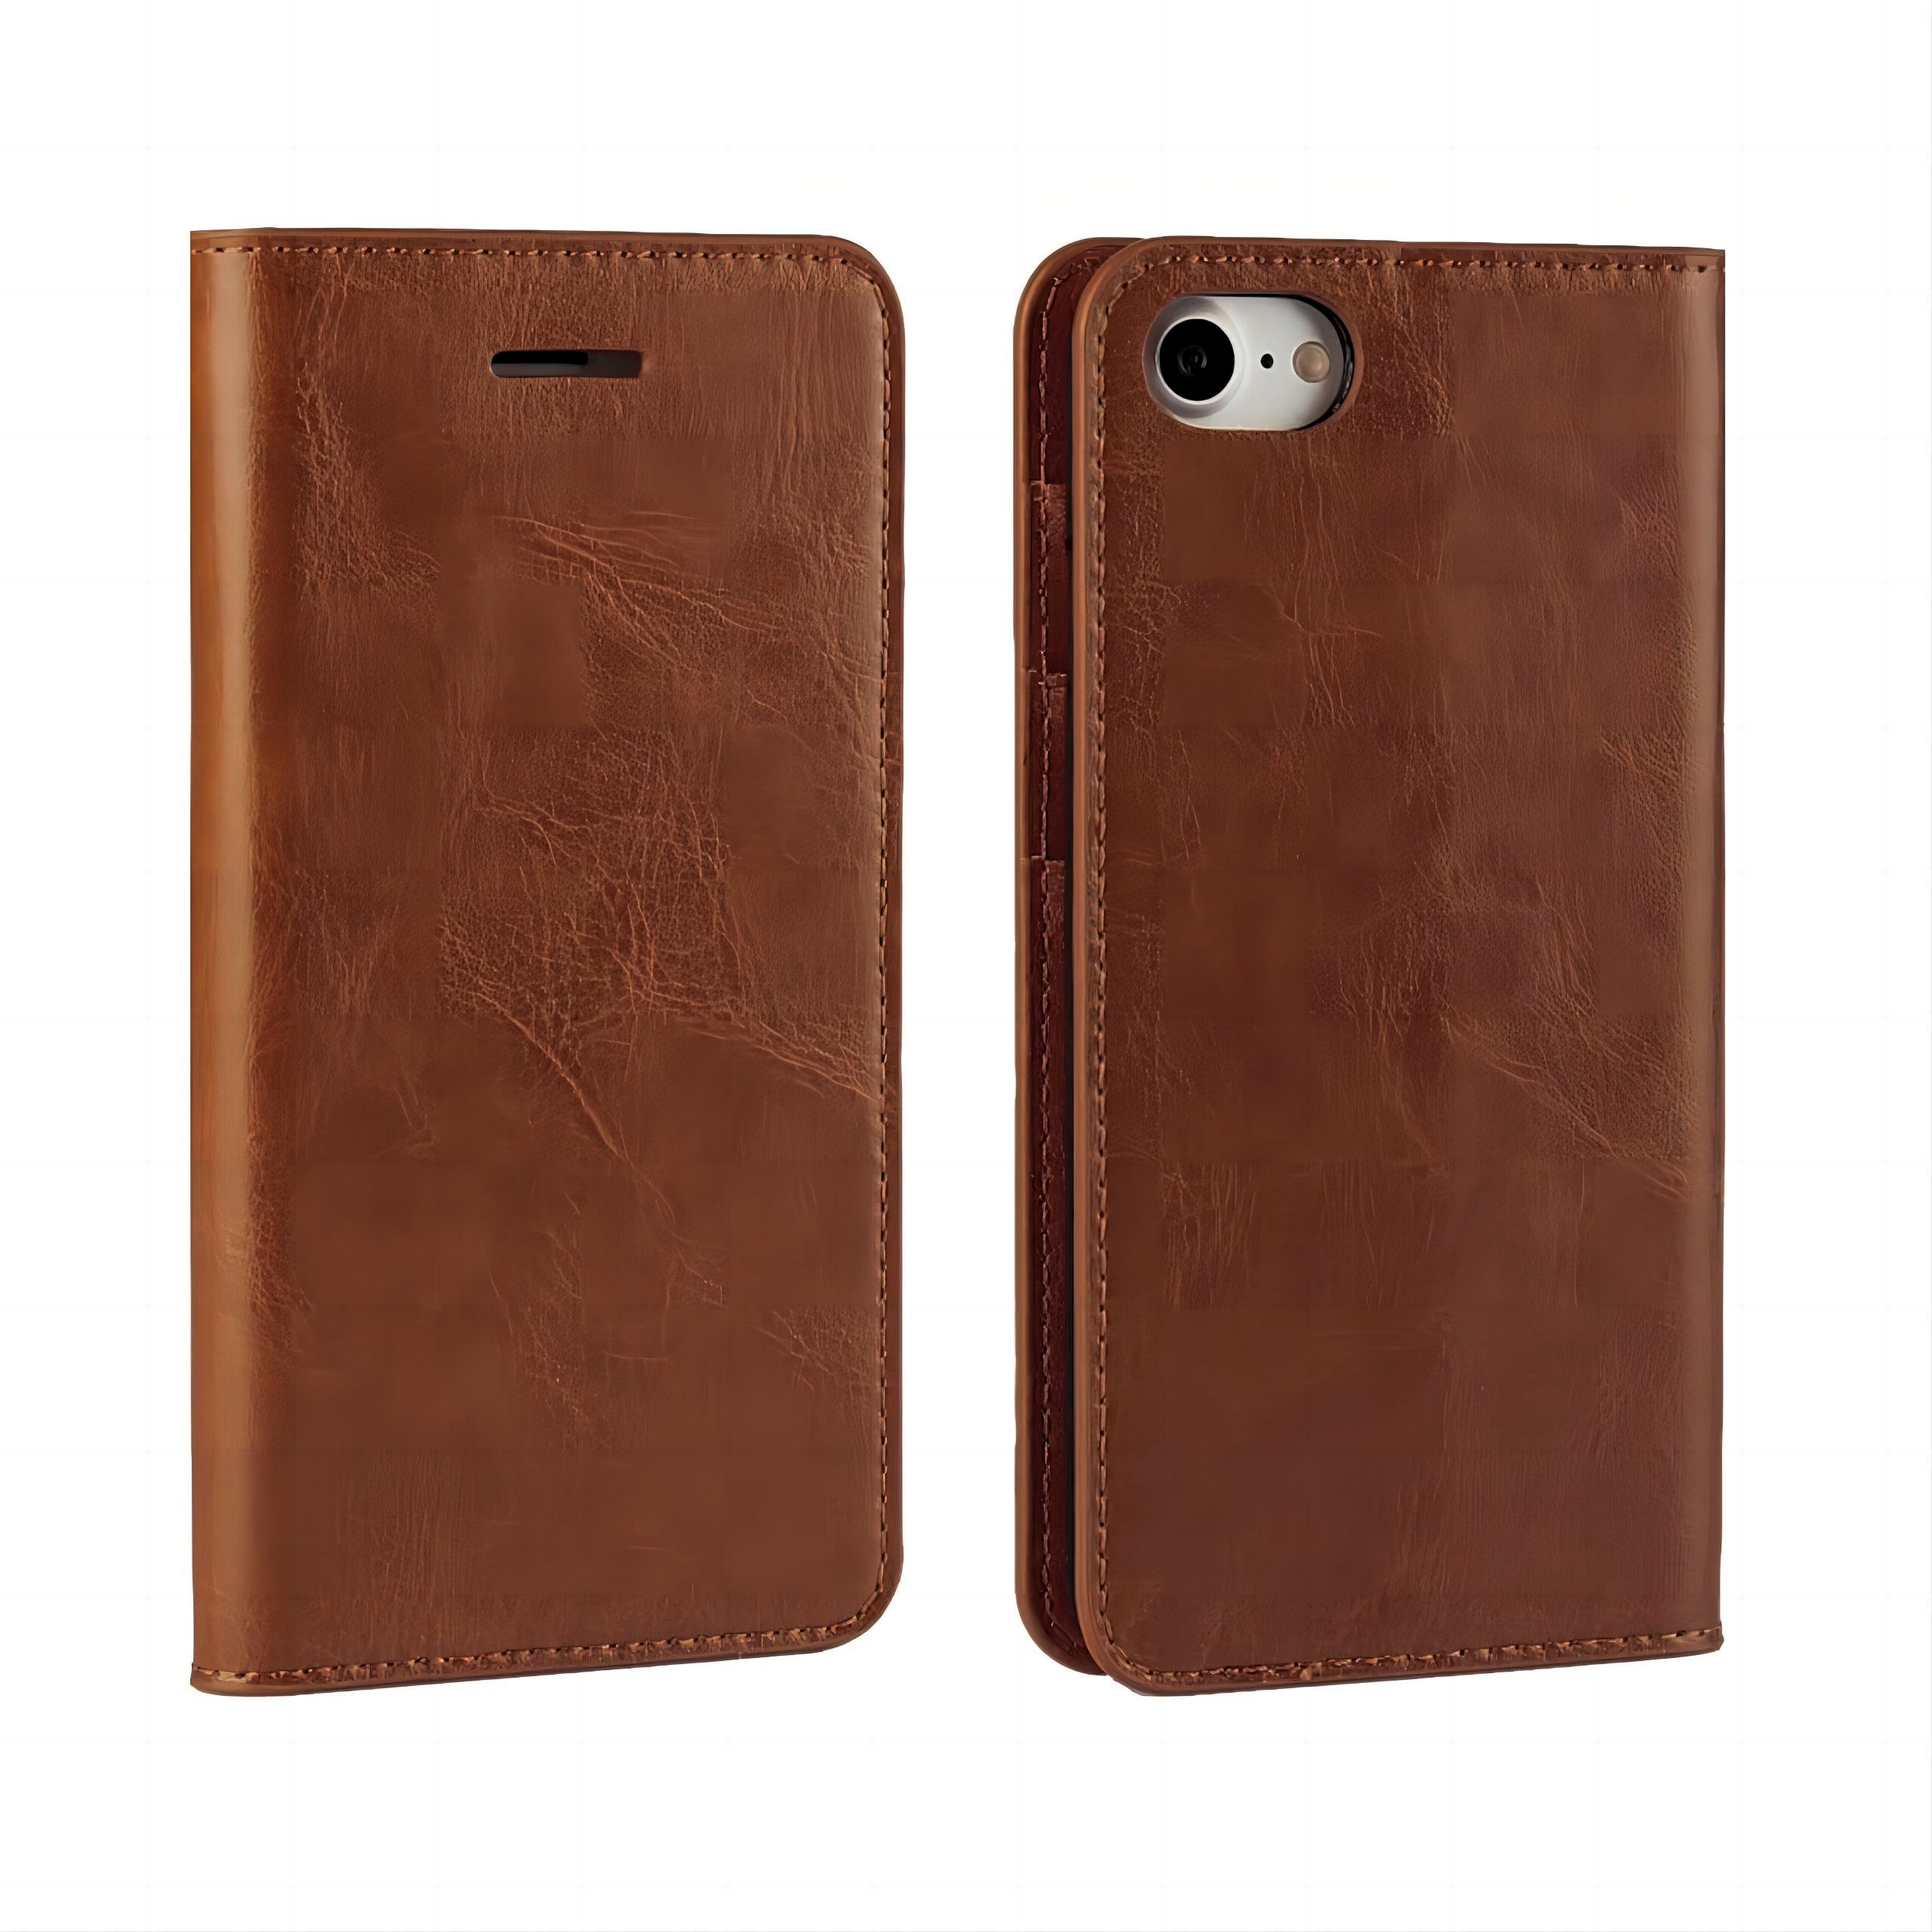 Mobiletui Ekte Lær iPhone SE (2020) brun